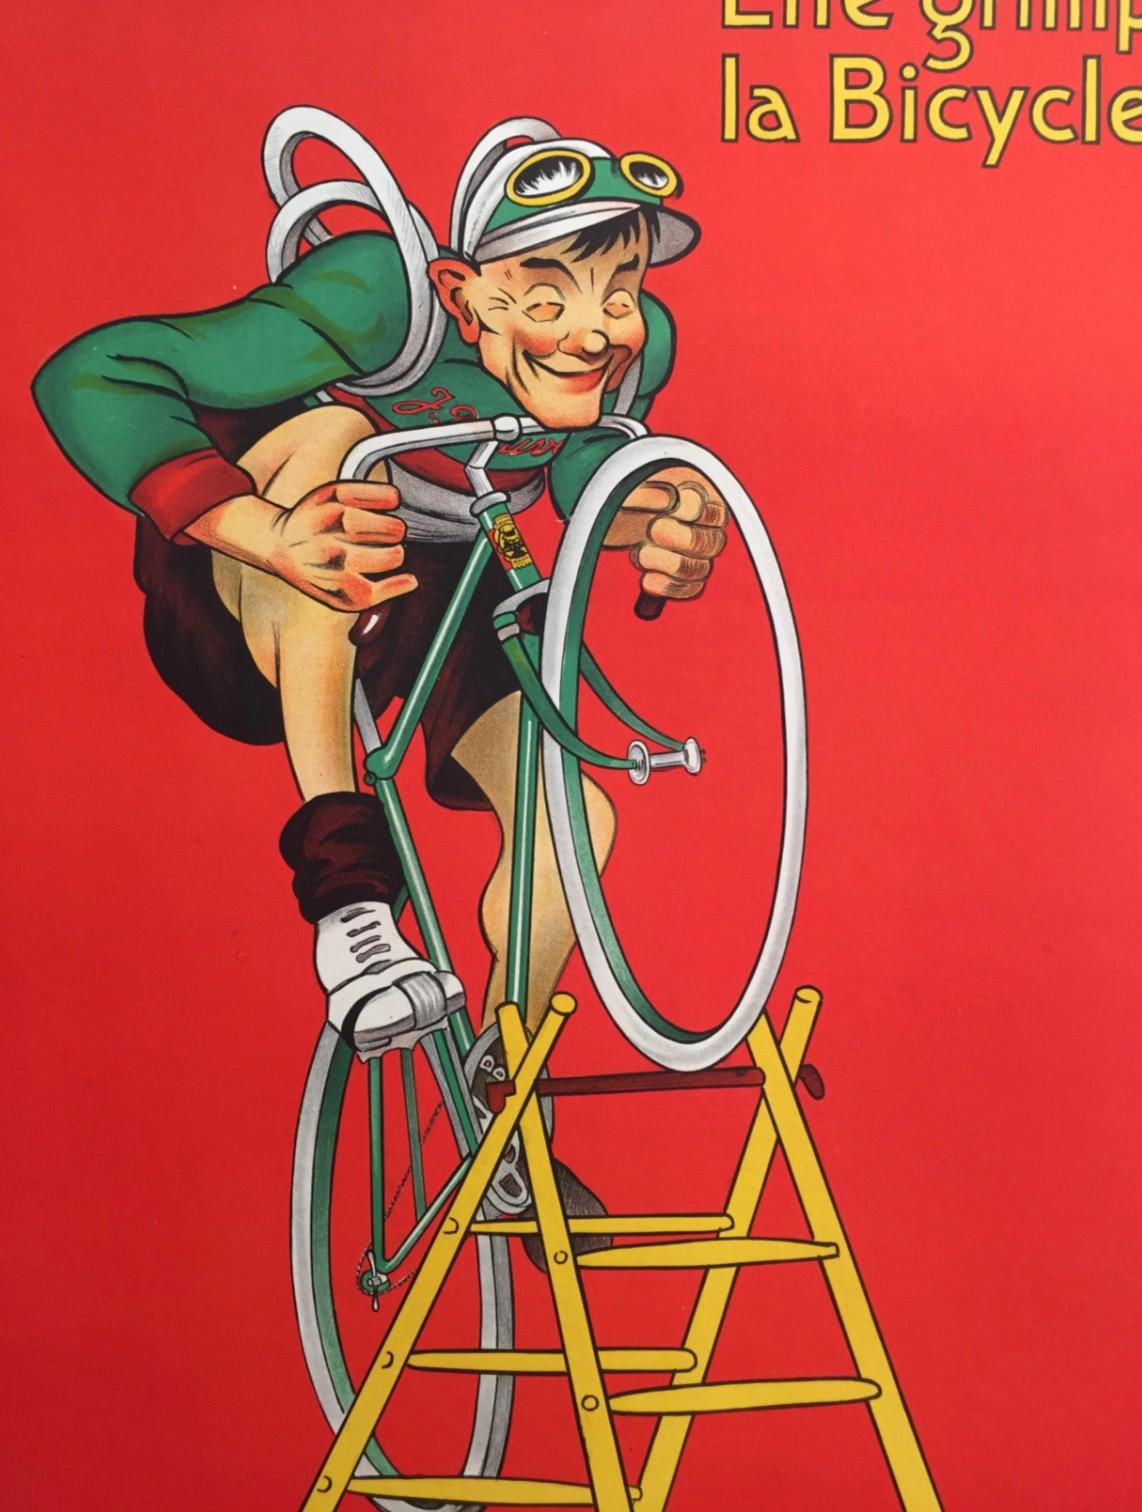 Dieses Originalplakat aus dem Jahr 1919 ist ein Muss für jeden Radsportbegeisterten! Dieses Plakat zeigt auf humorvolle Weise einen Mann, der versucht, mit seinem Fahrrad ohne Speichen eine Leiter hinaufzufahren. Die Farben sind leuchtend, das